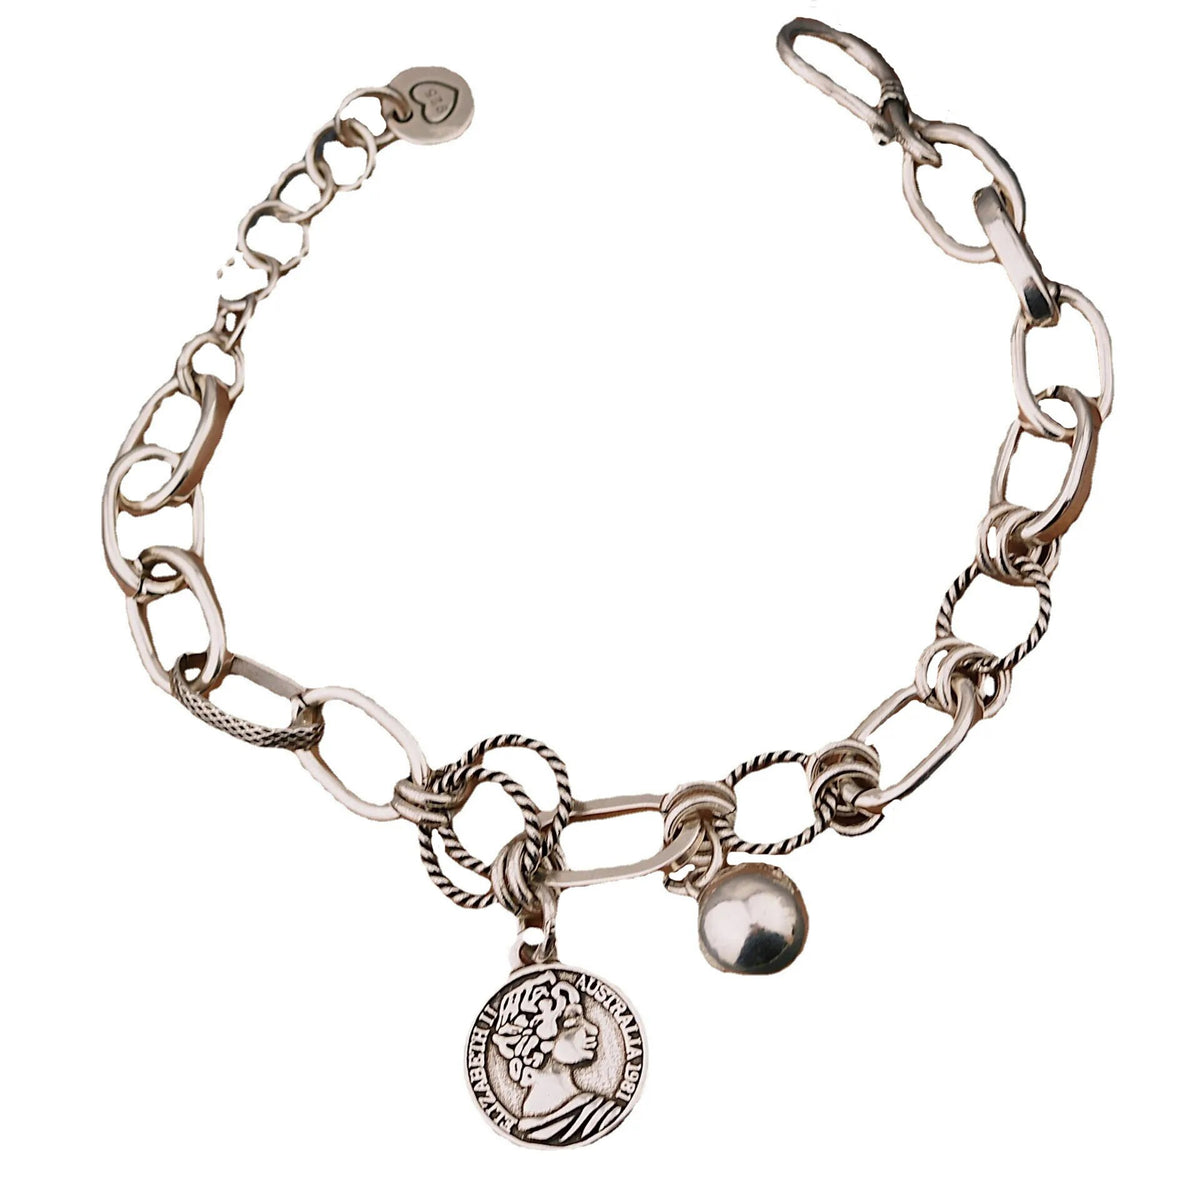 Solid 925 silver bracelet for women.